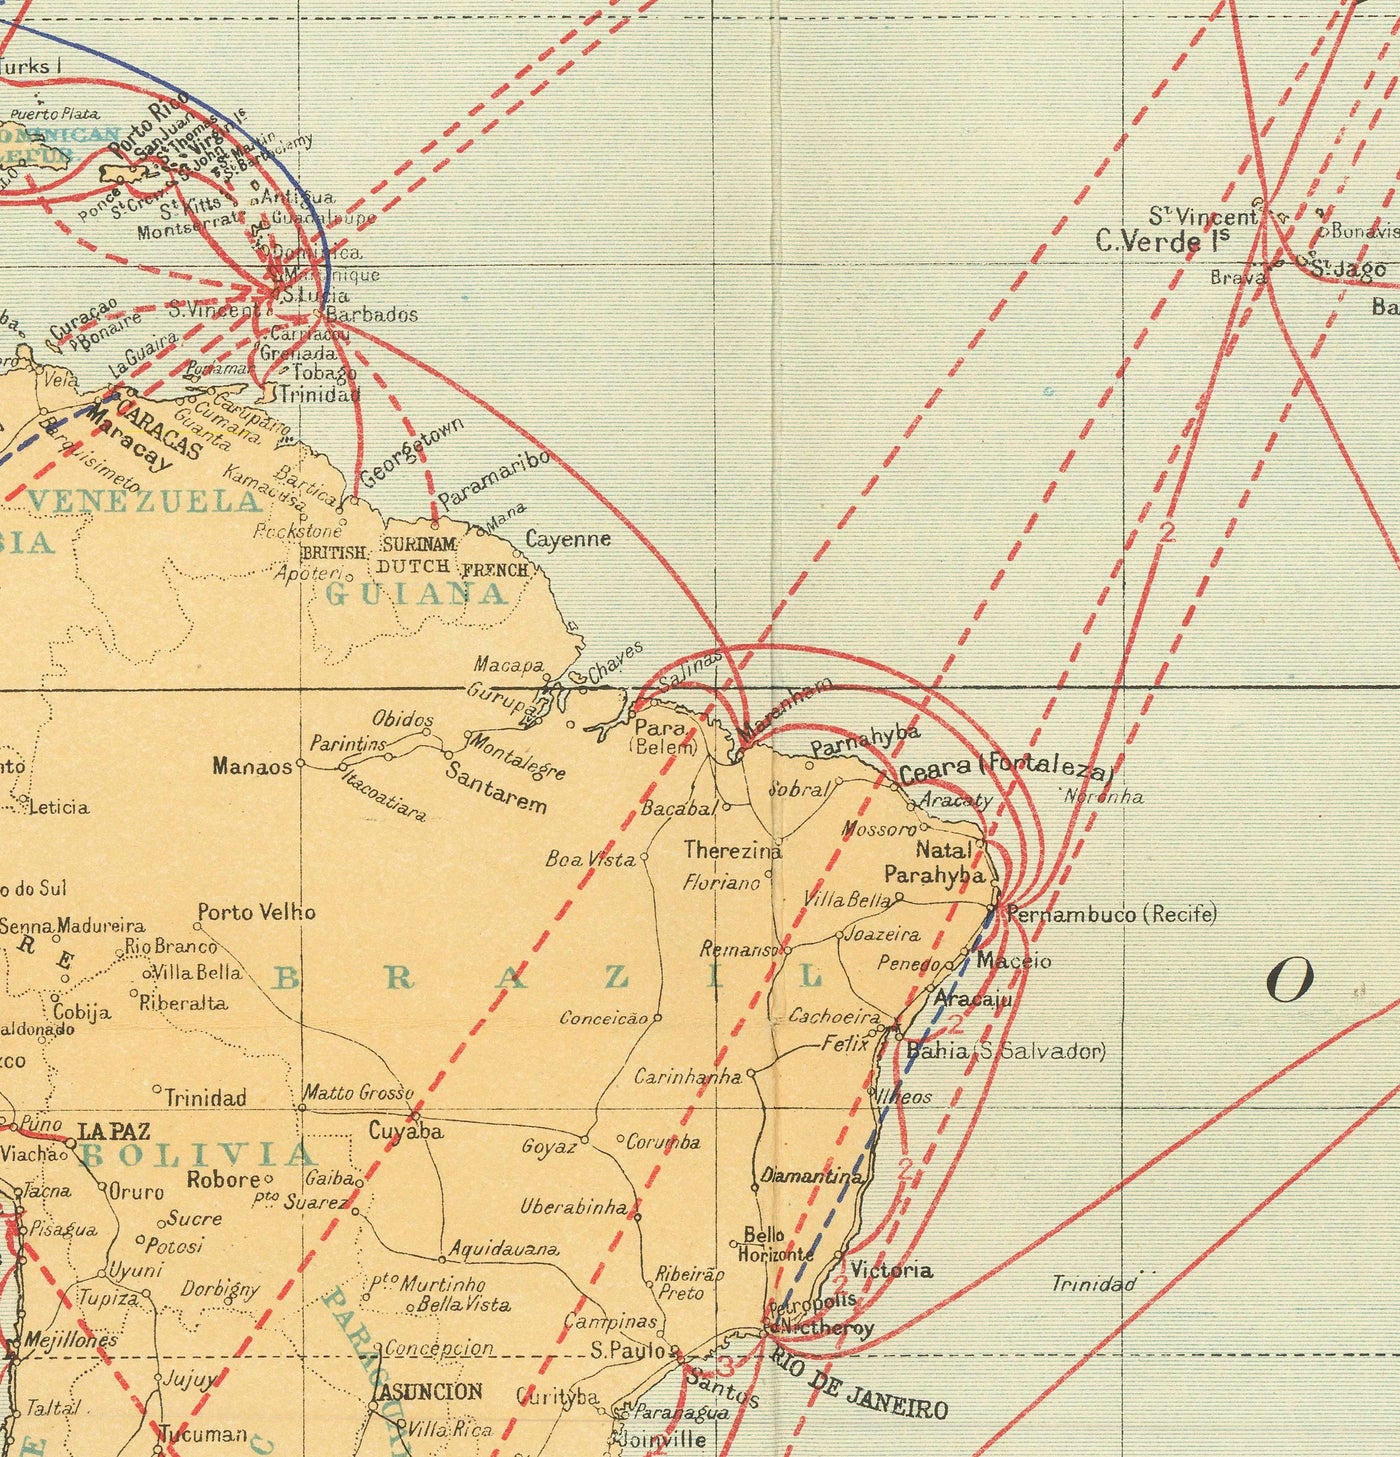 Mapa del mundo de cable antiguo e inalámbrico, 1938 - (muy temprano) Internet y tabla de telegrafía submarina